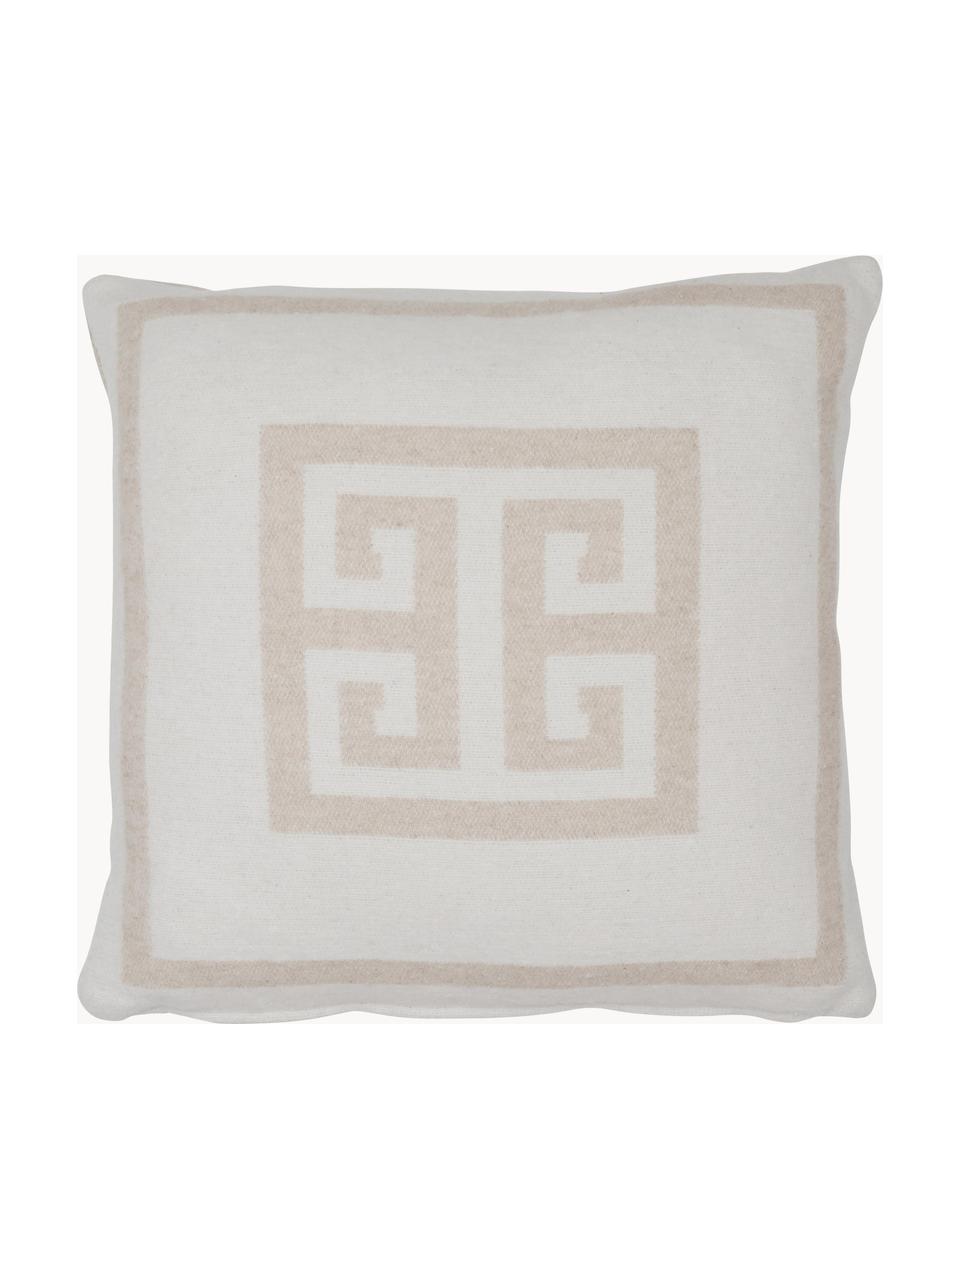 Kissenhülle Lugano in Beige/Weiß mit grafischem Muster, 100% Polyester, Sandfarben, Gebrochenes Weiß, B 45 x L 45 cm